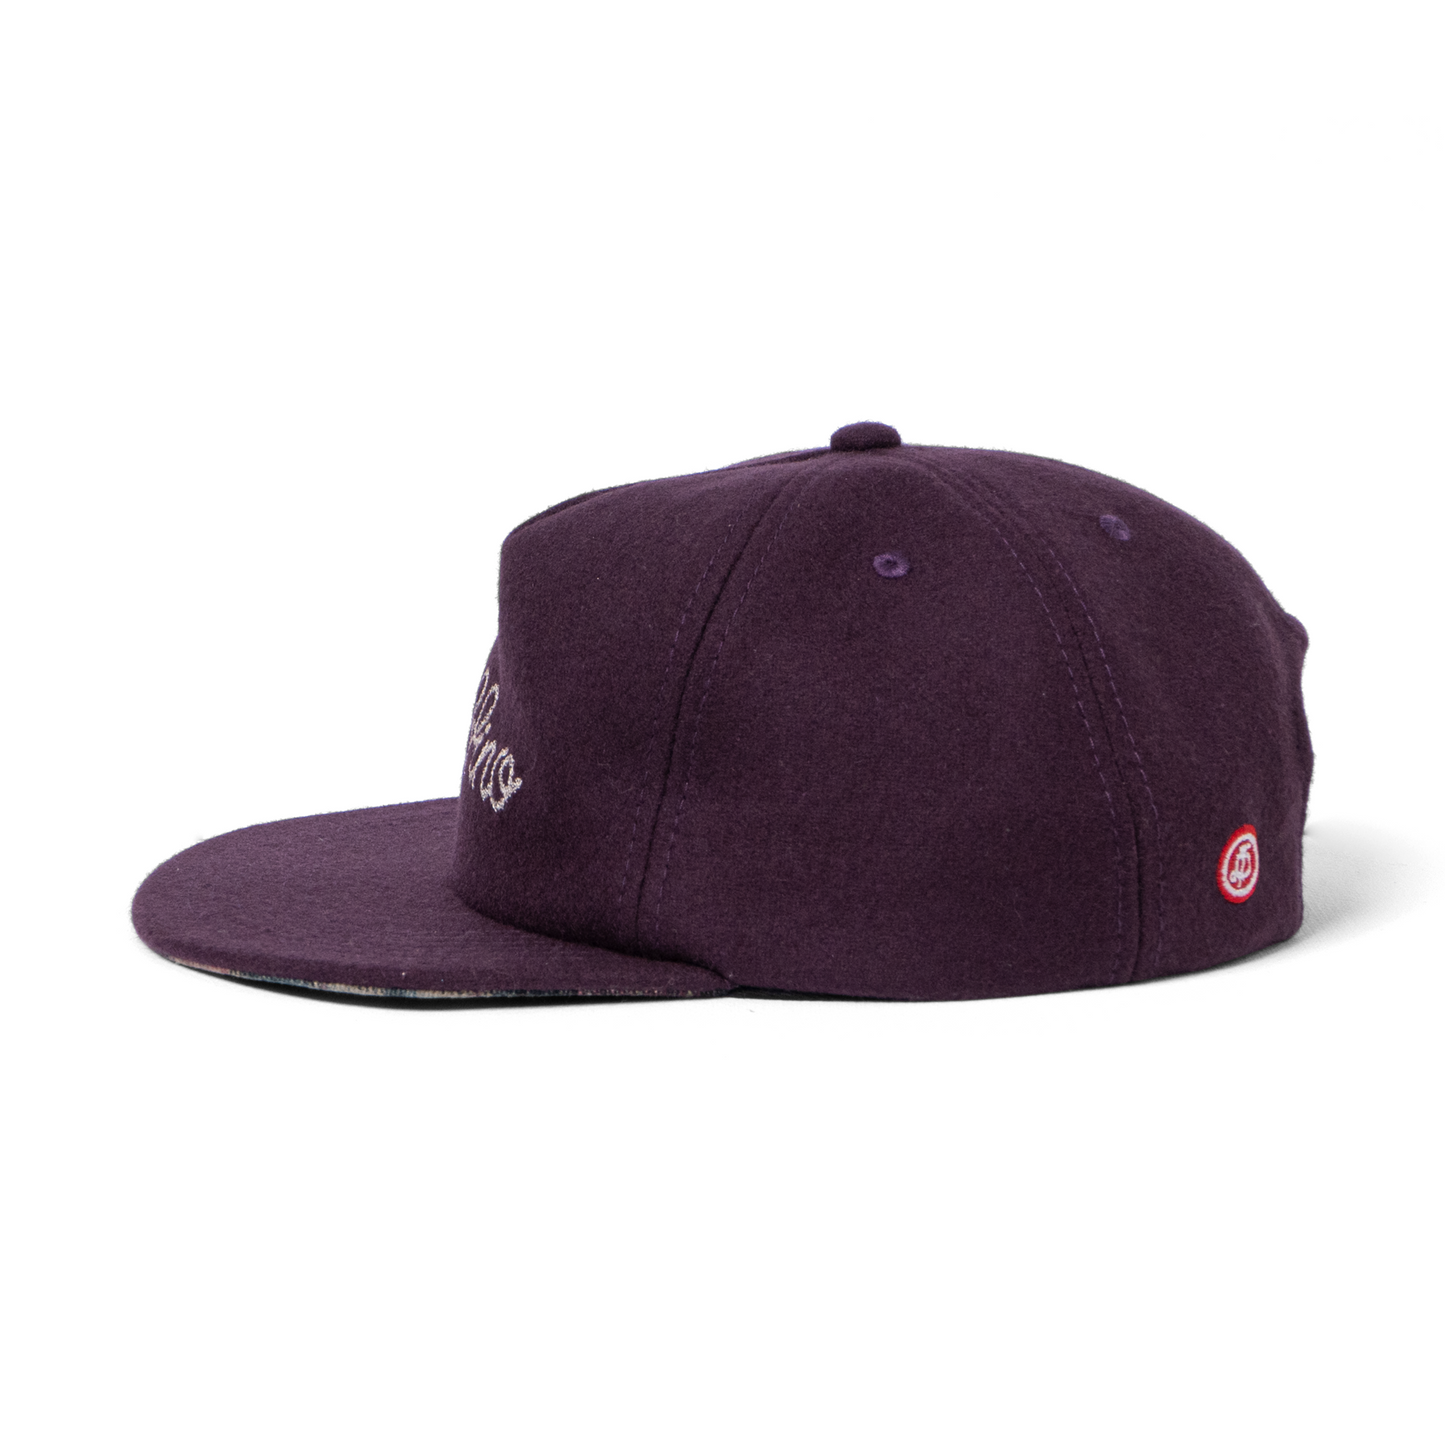 VICENTE CAP - UVA - TRUCKER HAT